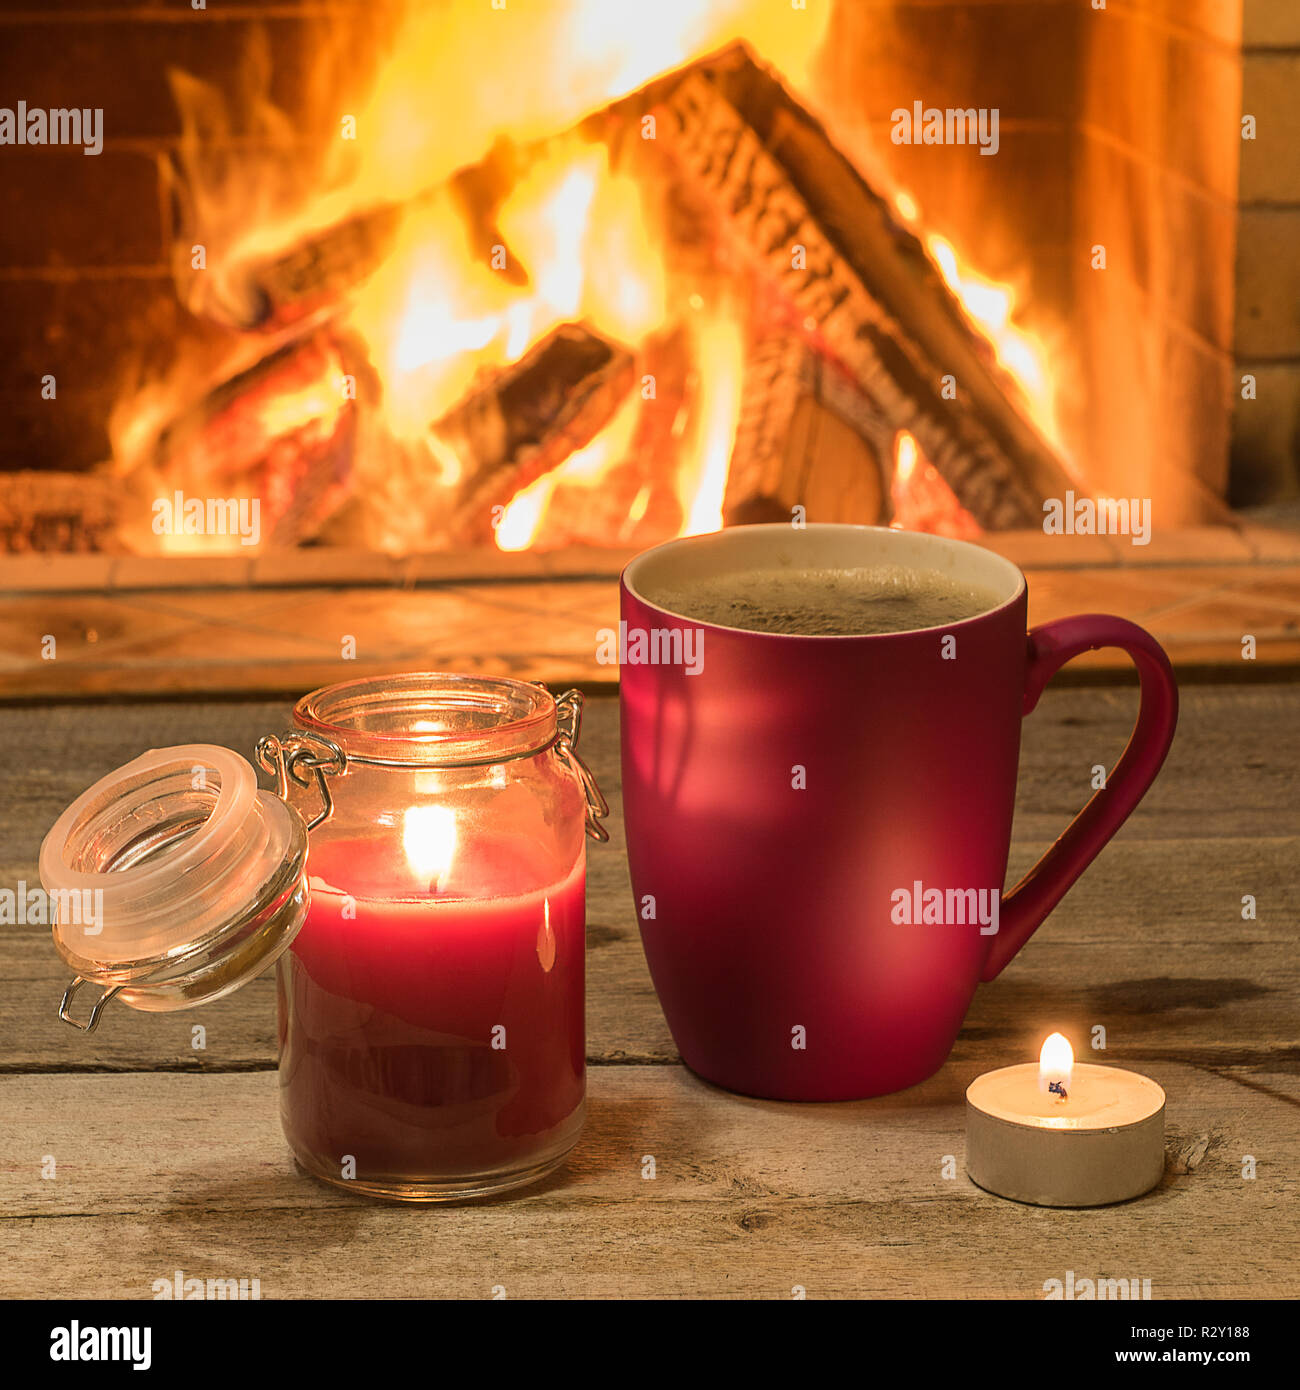 Becher mit heißem Tee und Kerzenschein in der Nähe von gemütlichem Kamin, im Landhaus, winter Urlaub, horizontal. Stockfoto